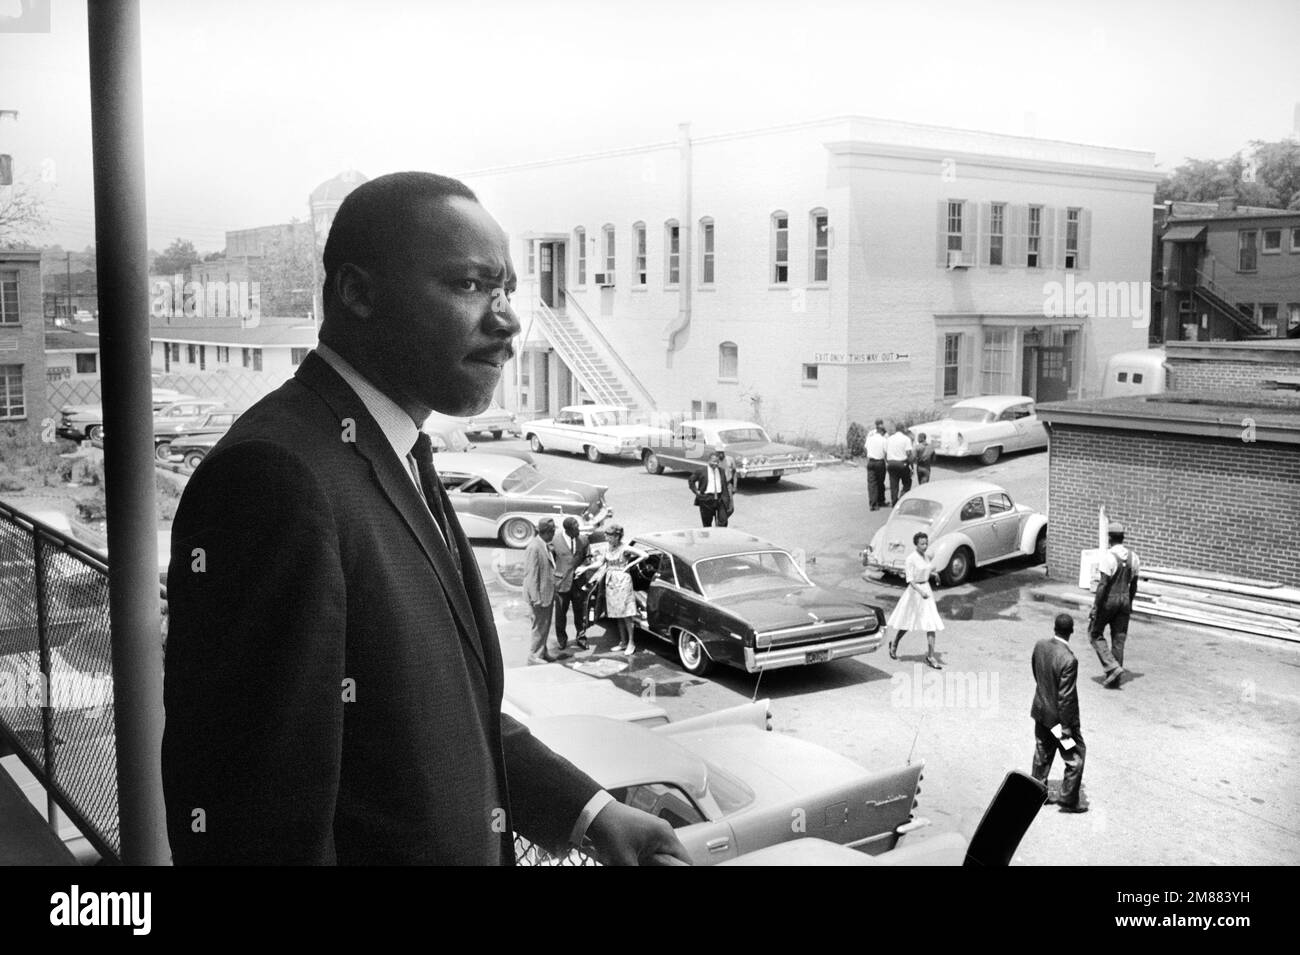 Martin Luther King in piedi sul balcone dell'A. G. Gaston Motel con vista sul parcheggio, durante la campagna di Birmingham, Birmingham, Alabama, USA, Trikosko, US News & World Report Magazine Collection, 16 maggio 1963 Foto Stock